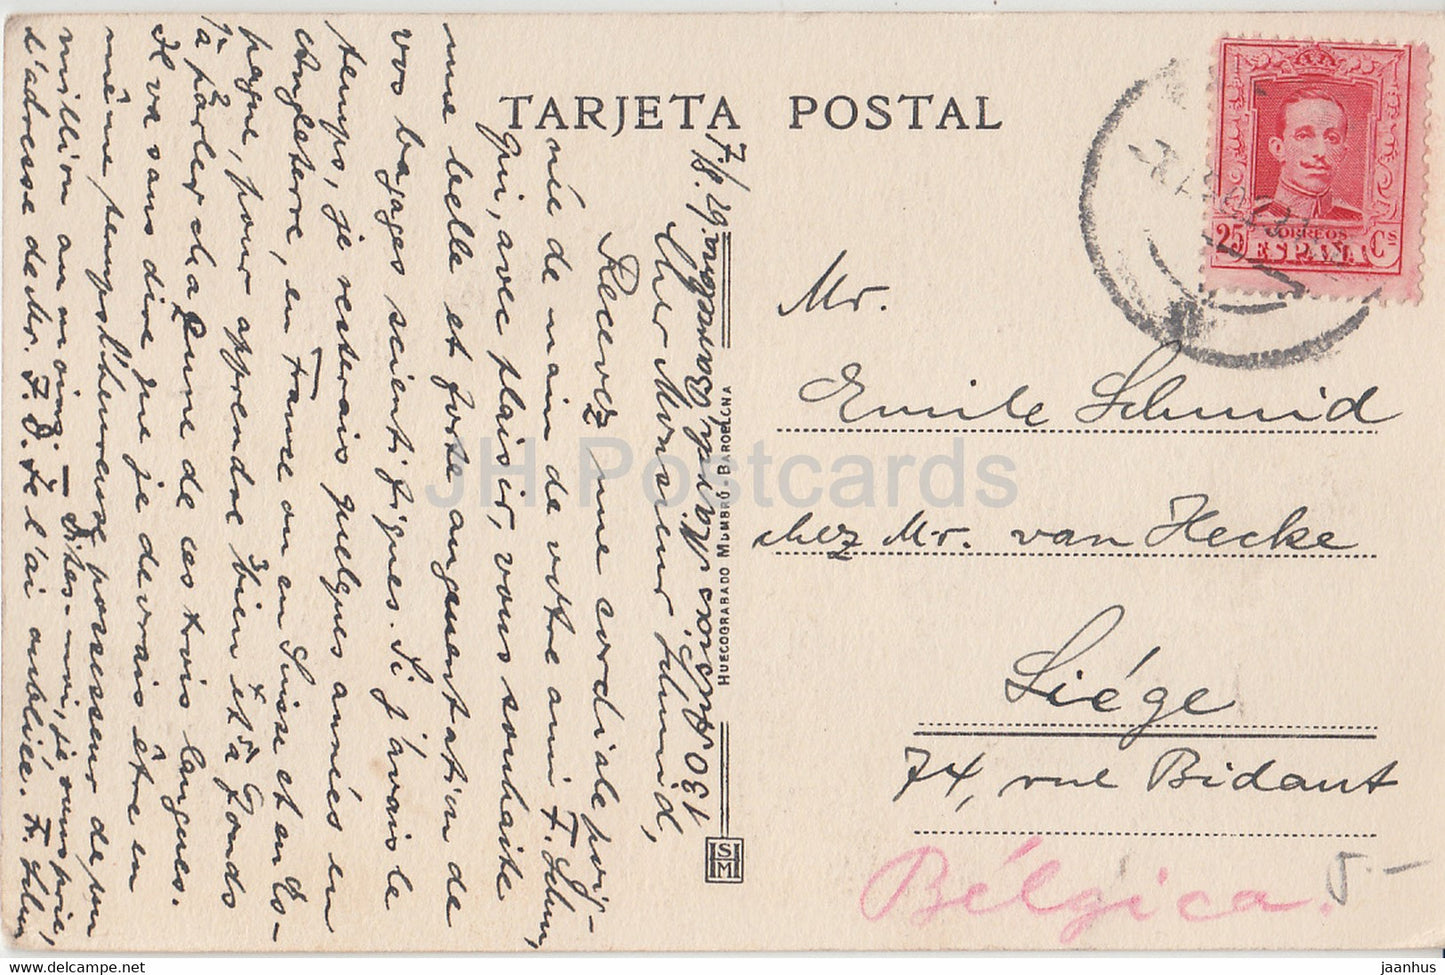 Barcelone - Palacio de la Diputacion - Patio de los Naranjos - 92 - carte postale ancienne - 1929 - Espagne - utilisé